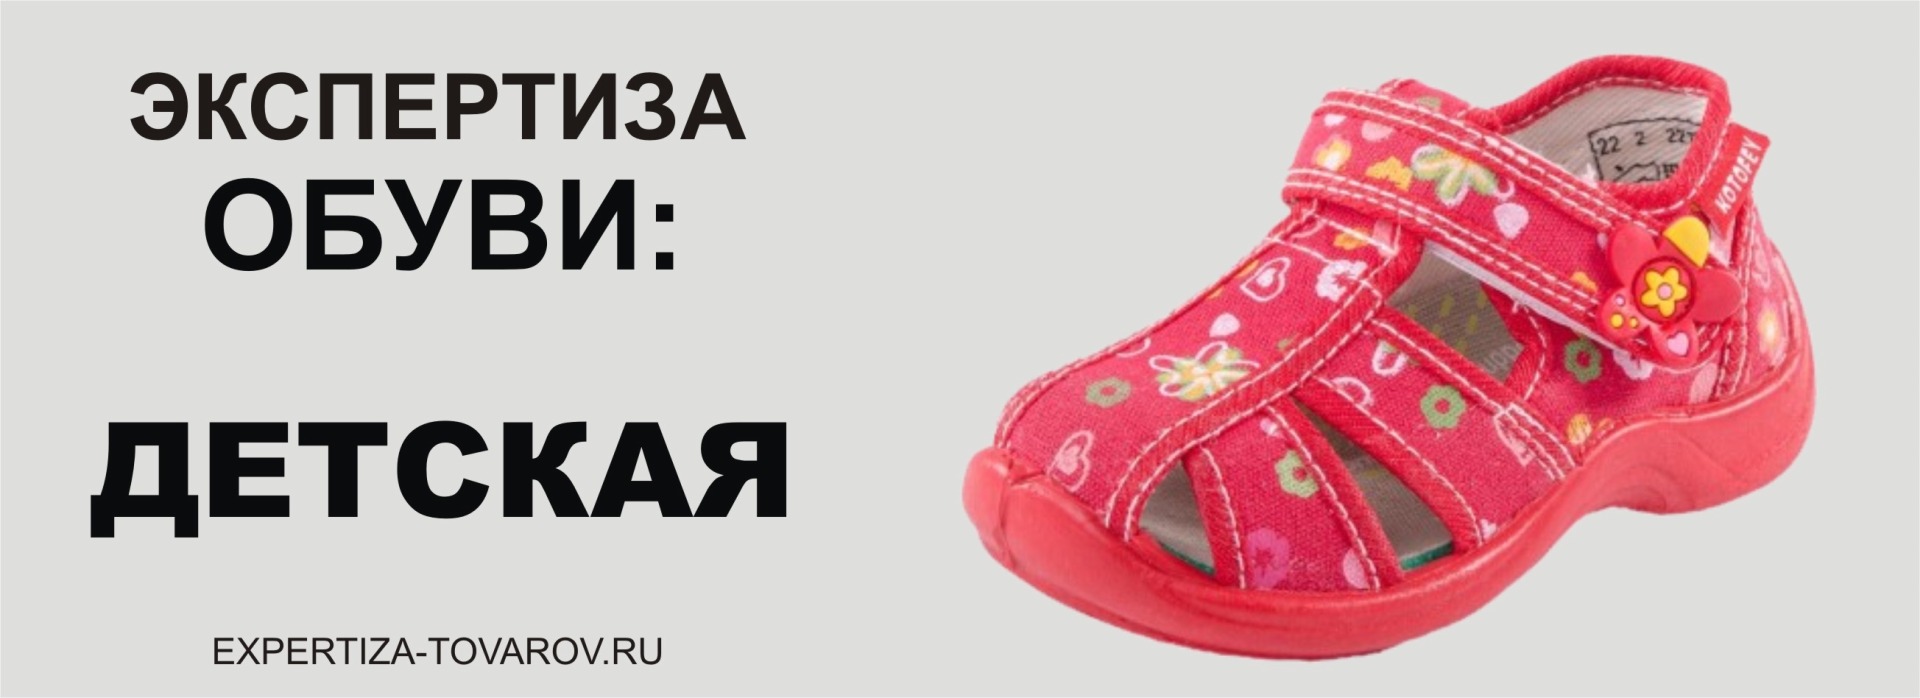 Независимая экспертиза обуви в Тамбове Санкт Петербурге для суда внесудебная экспертиза досудебная экспертиза обуви